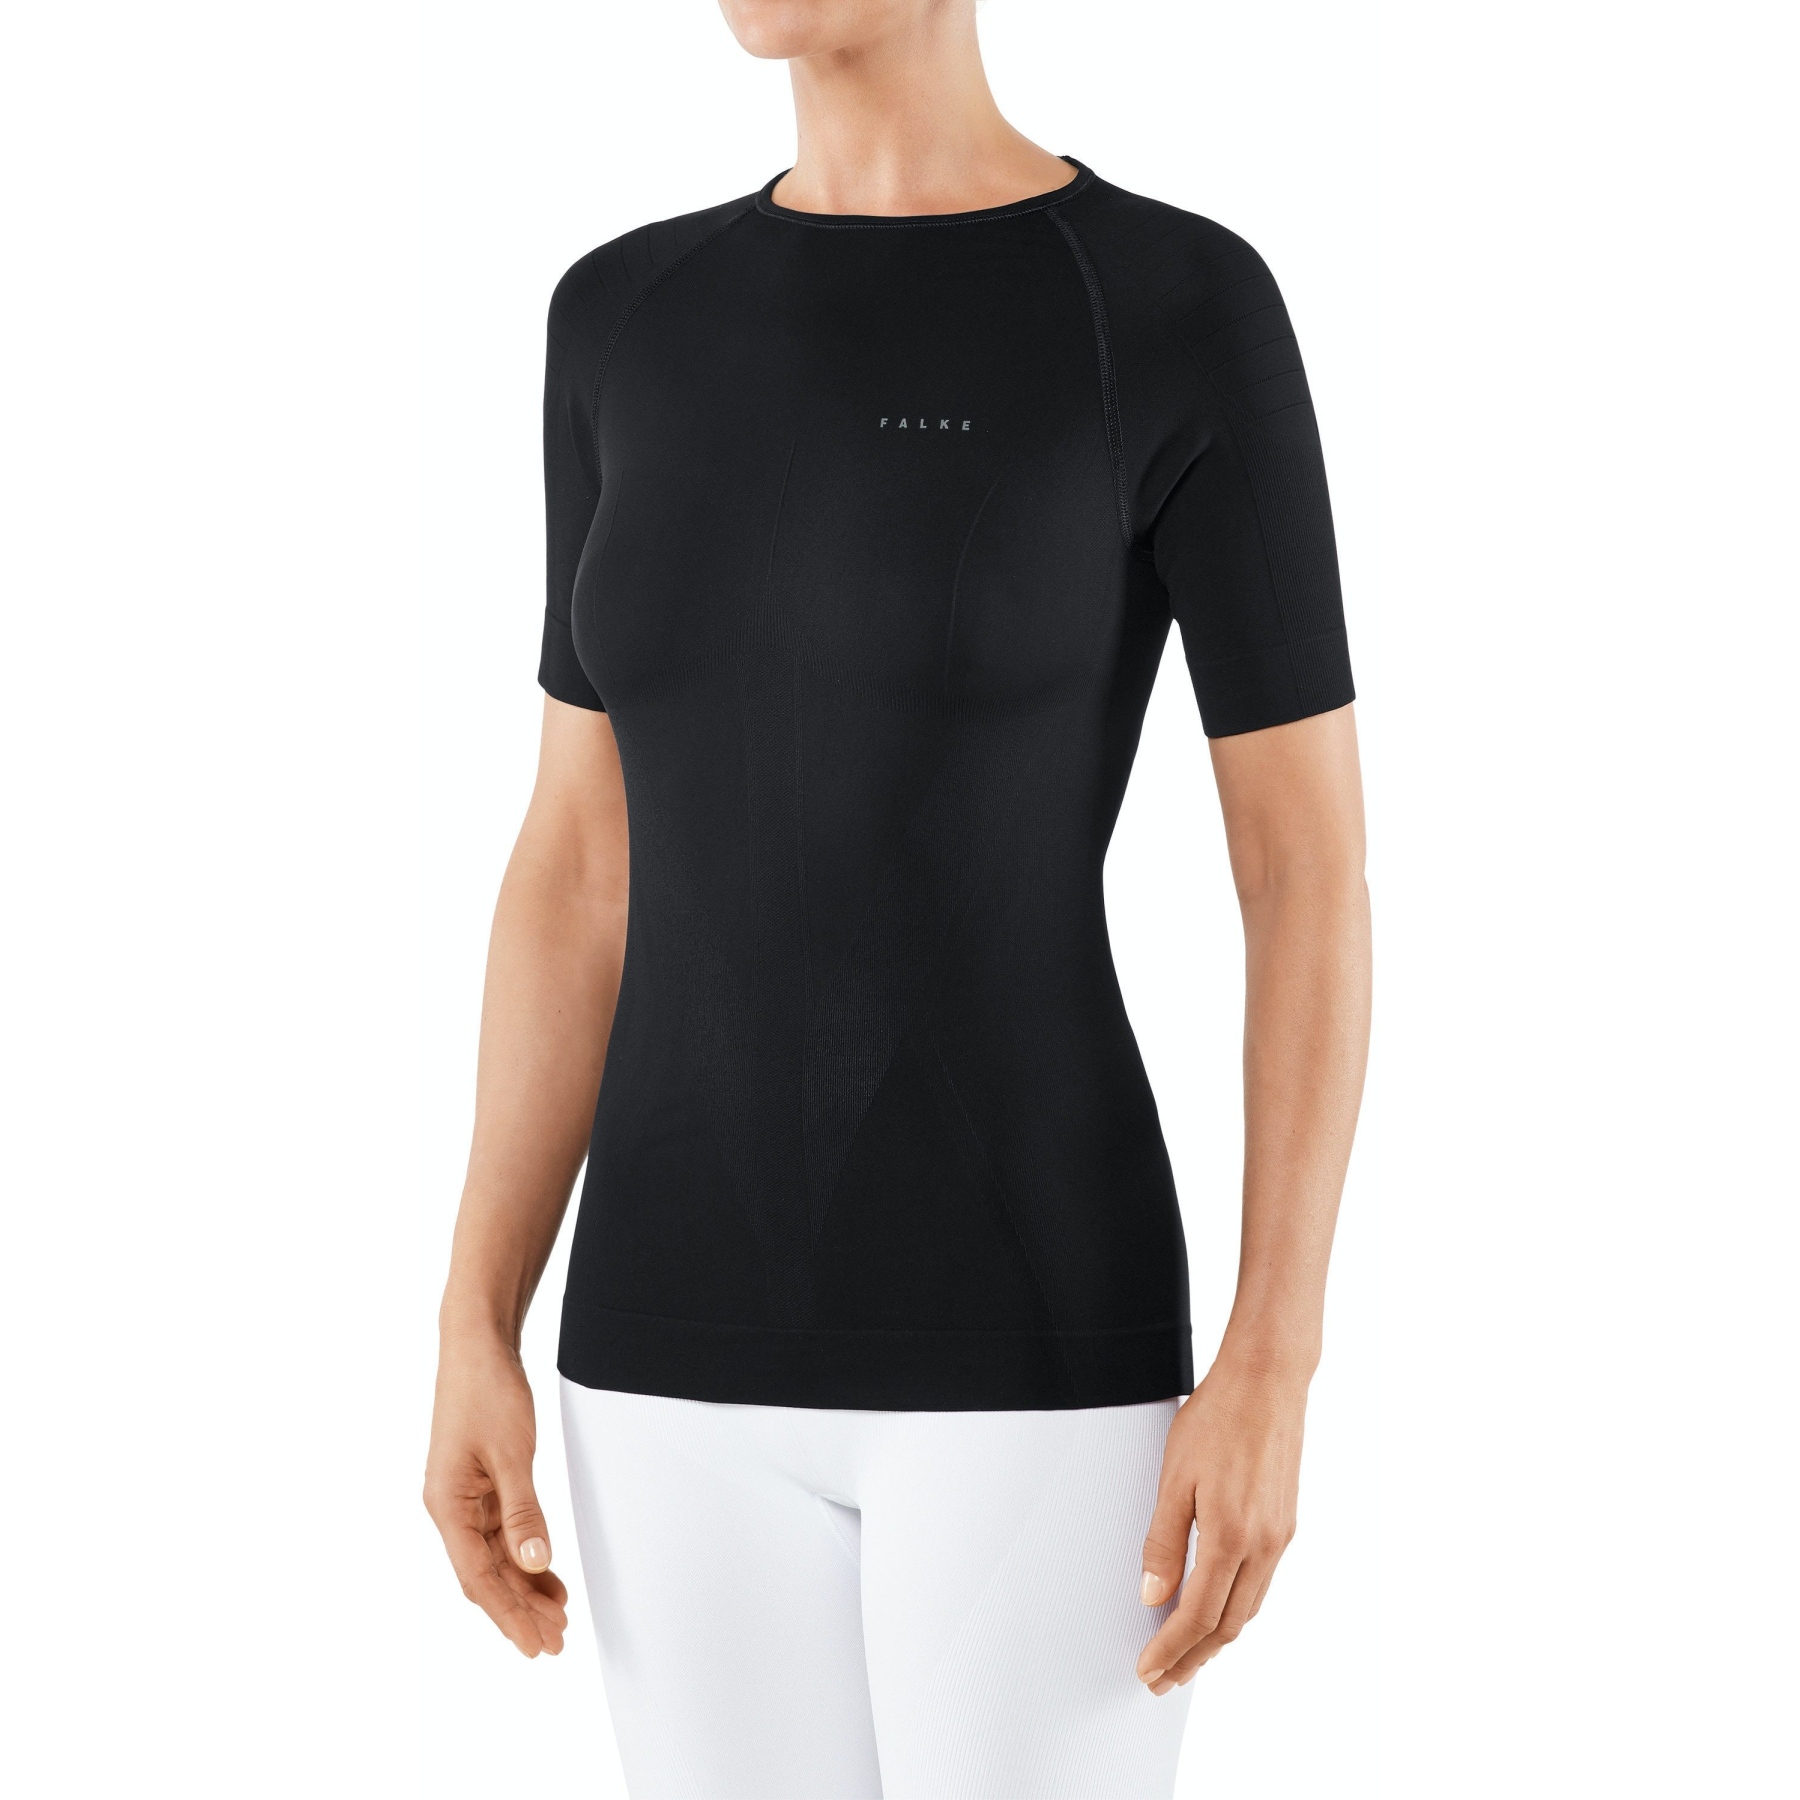 Produktbild von Falke Warm T-Shirt Damen - schwarz 3000